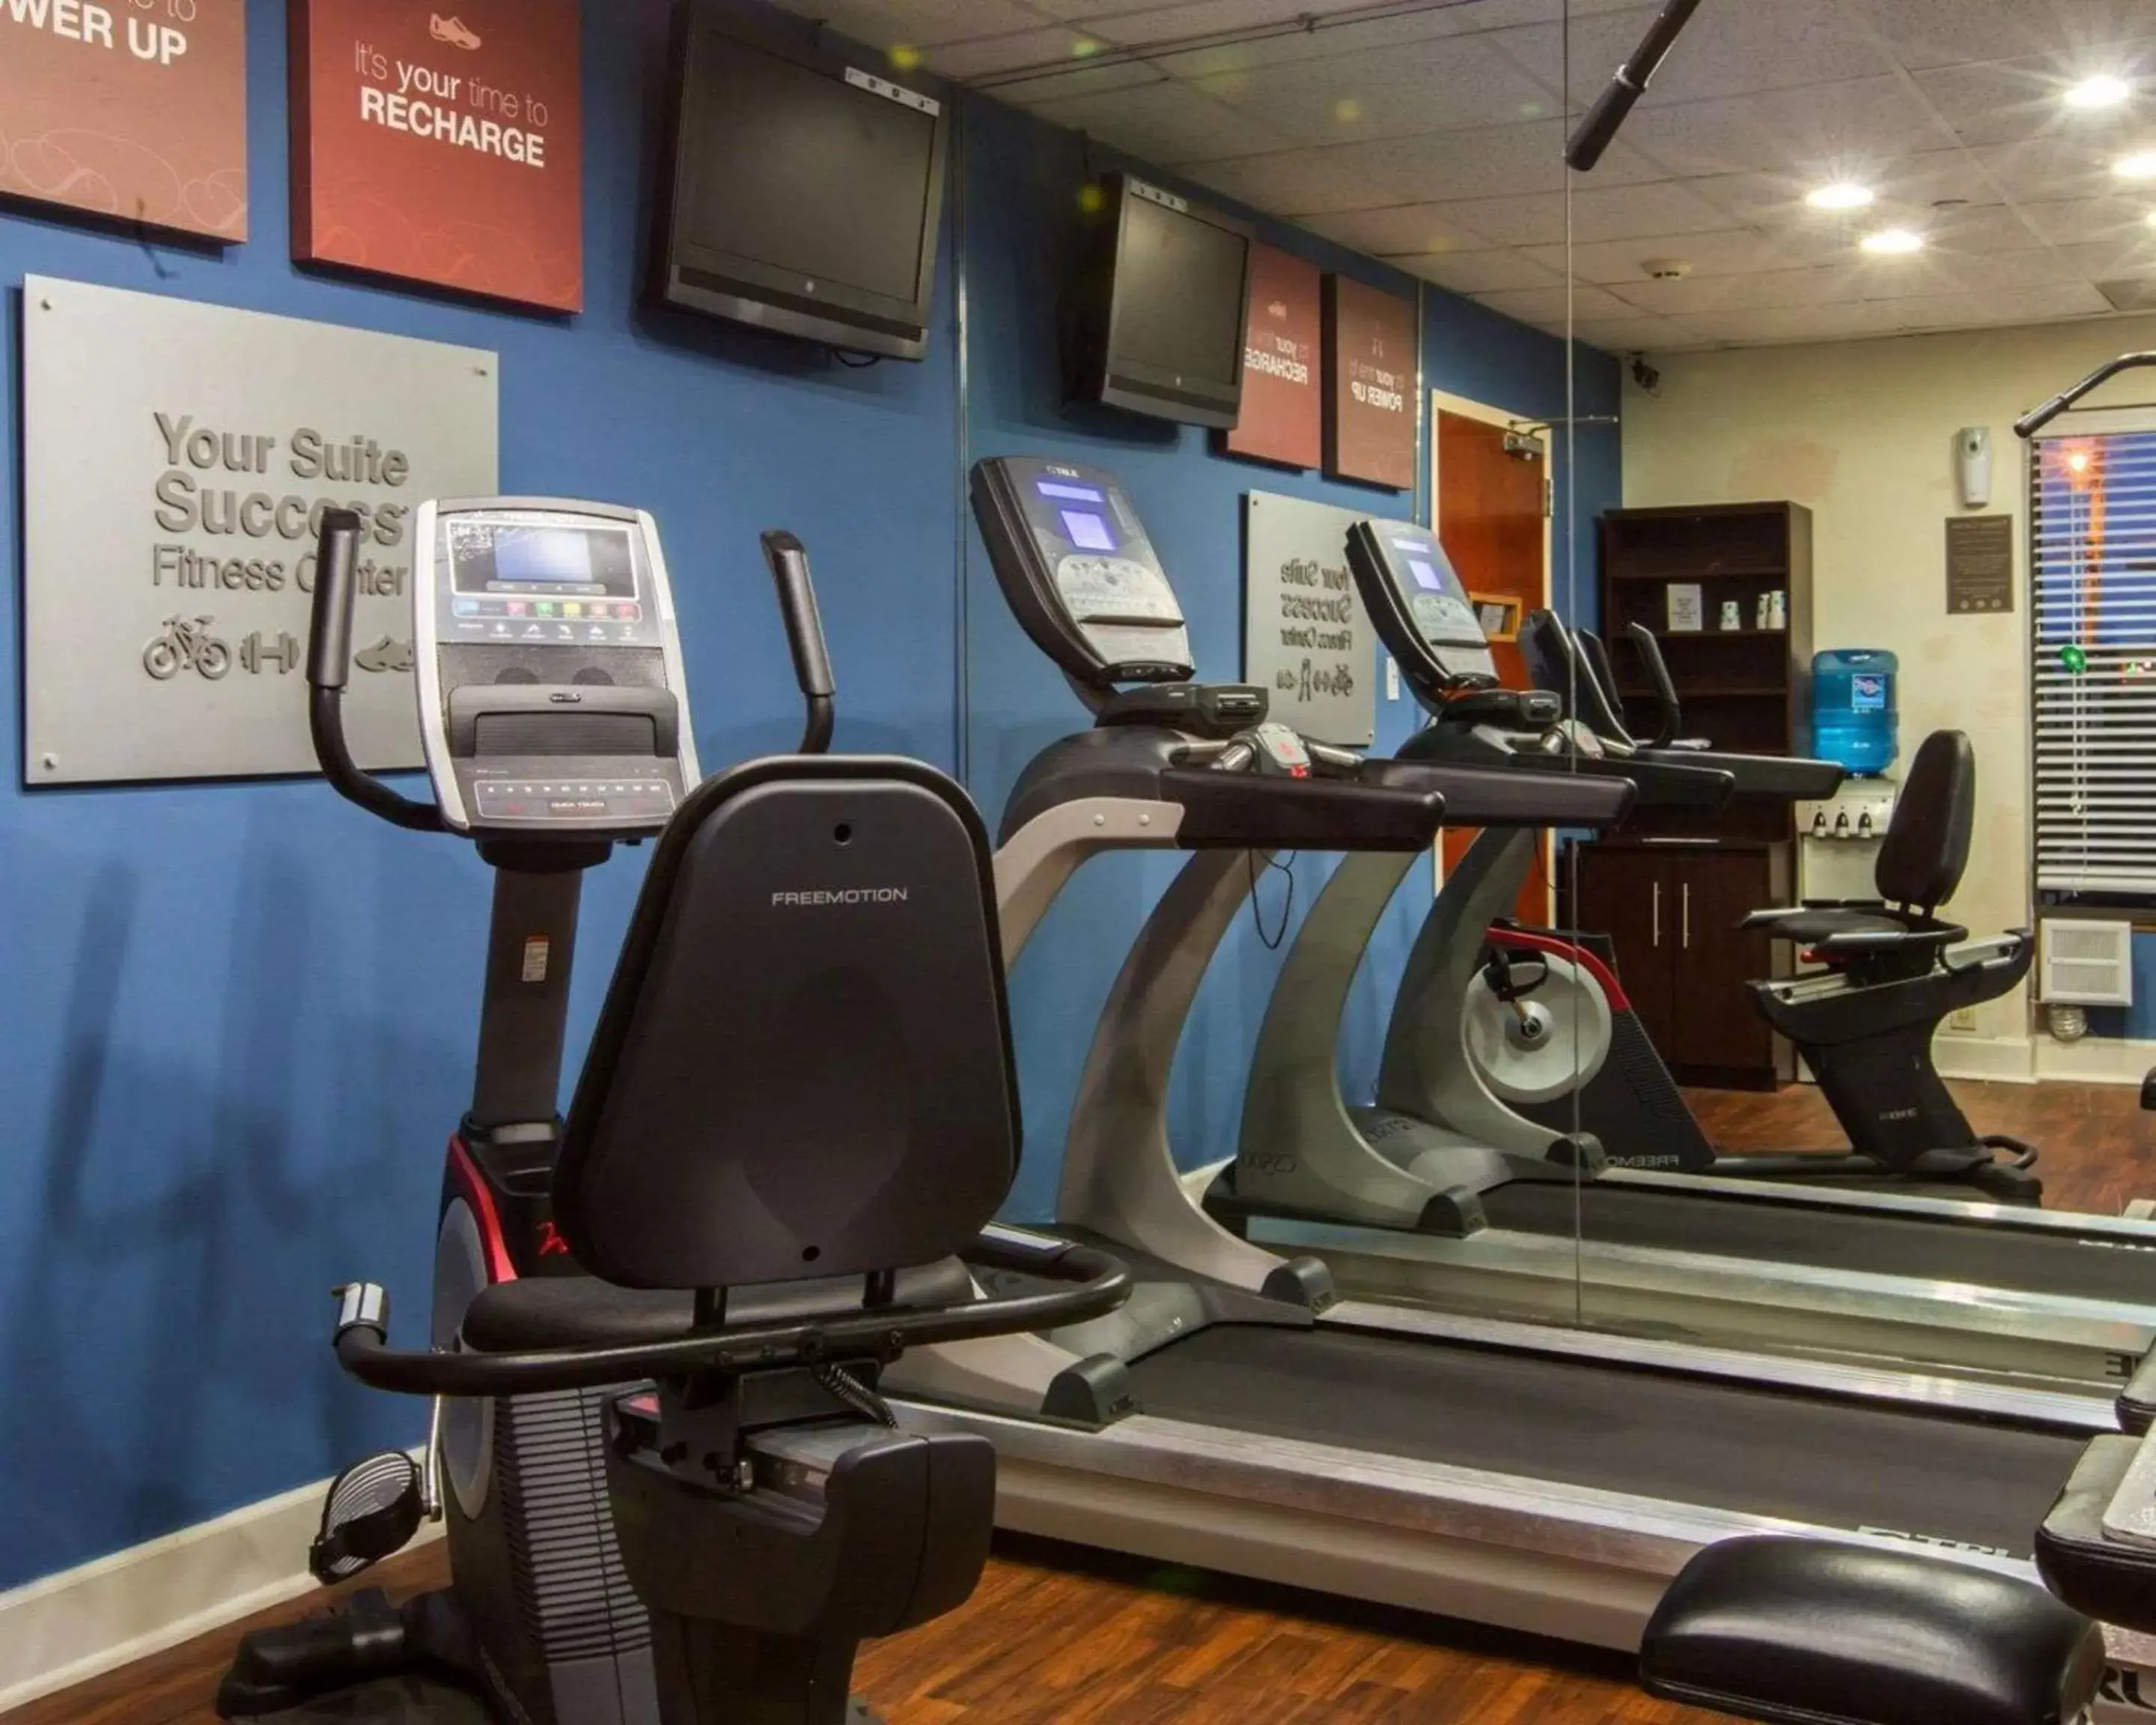 Fitness centre/facilities, Fitness Center/Facilities in Comfort Suites Cumming-Atlanta near Northside Hospital Forsyth